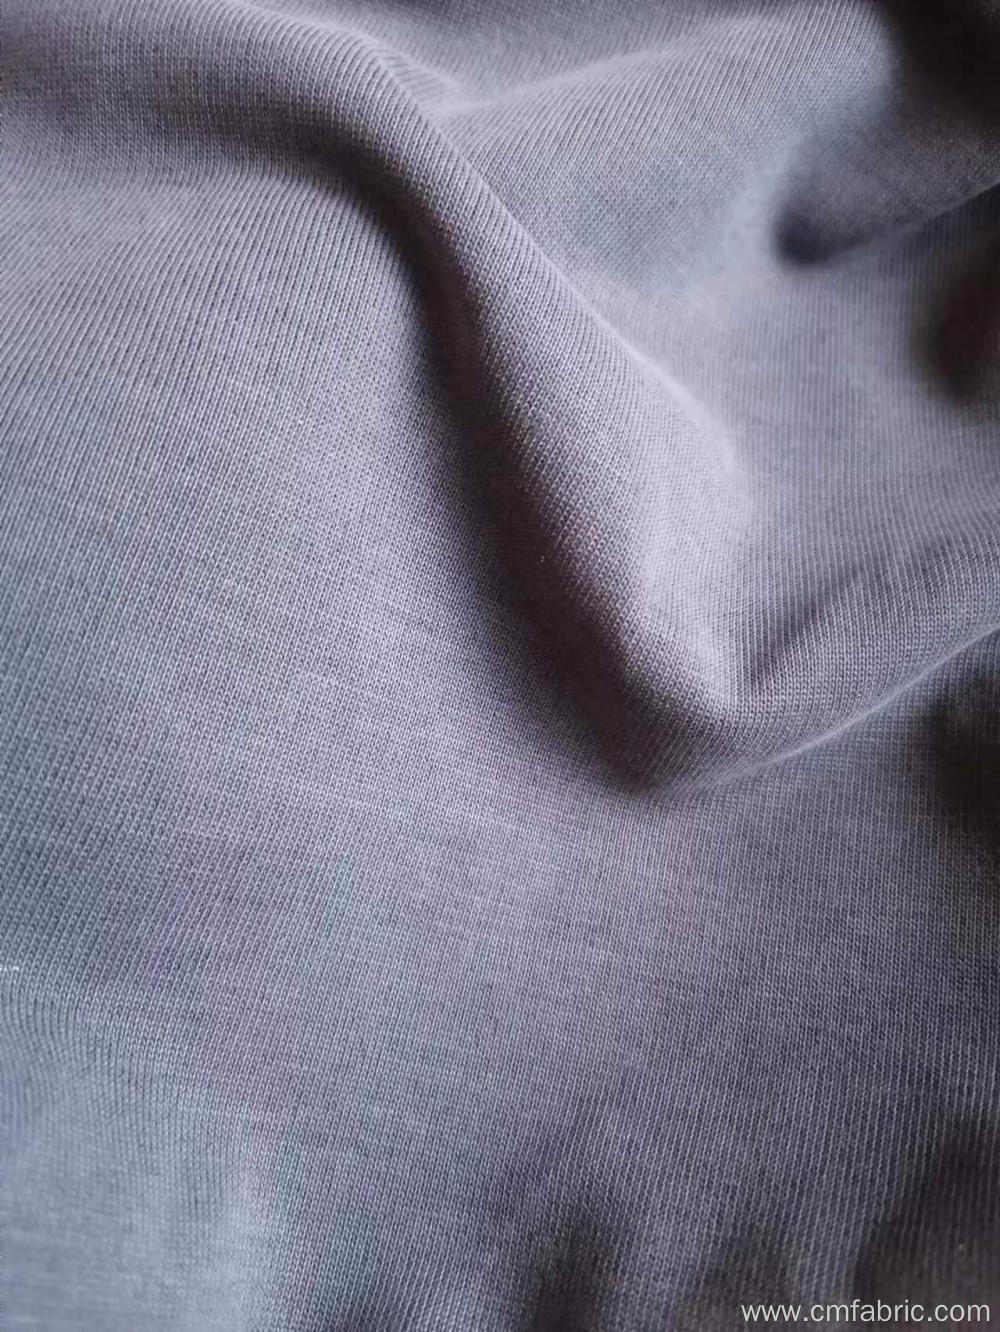 Siro compact Modal Polyester single jersey sandwashed fabric